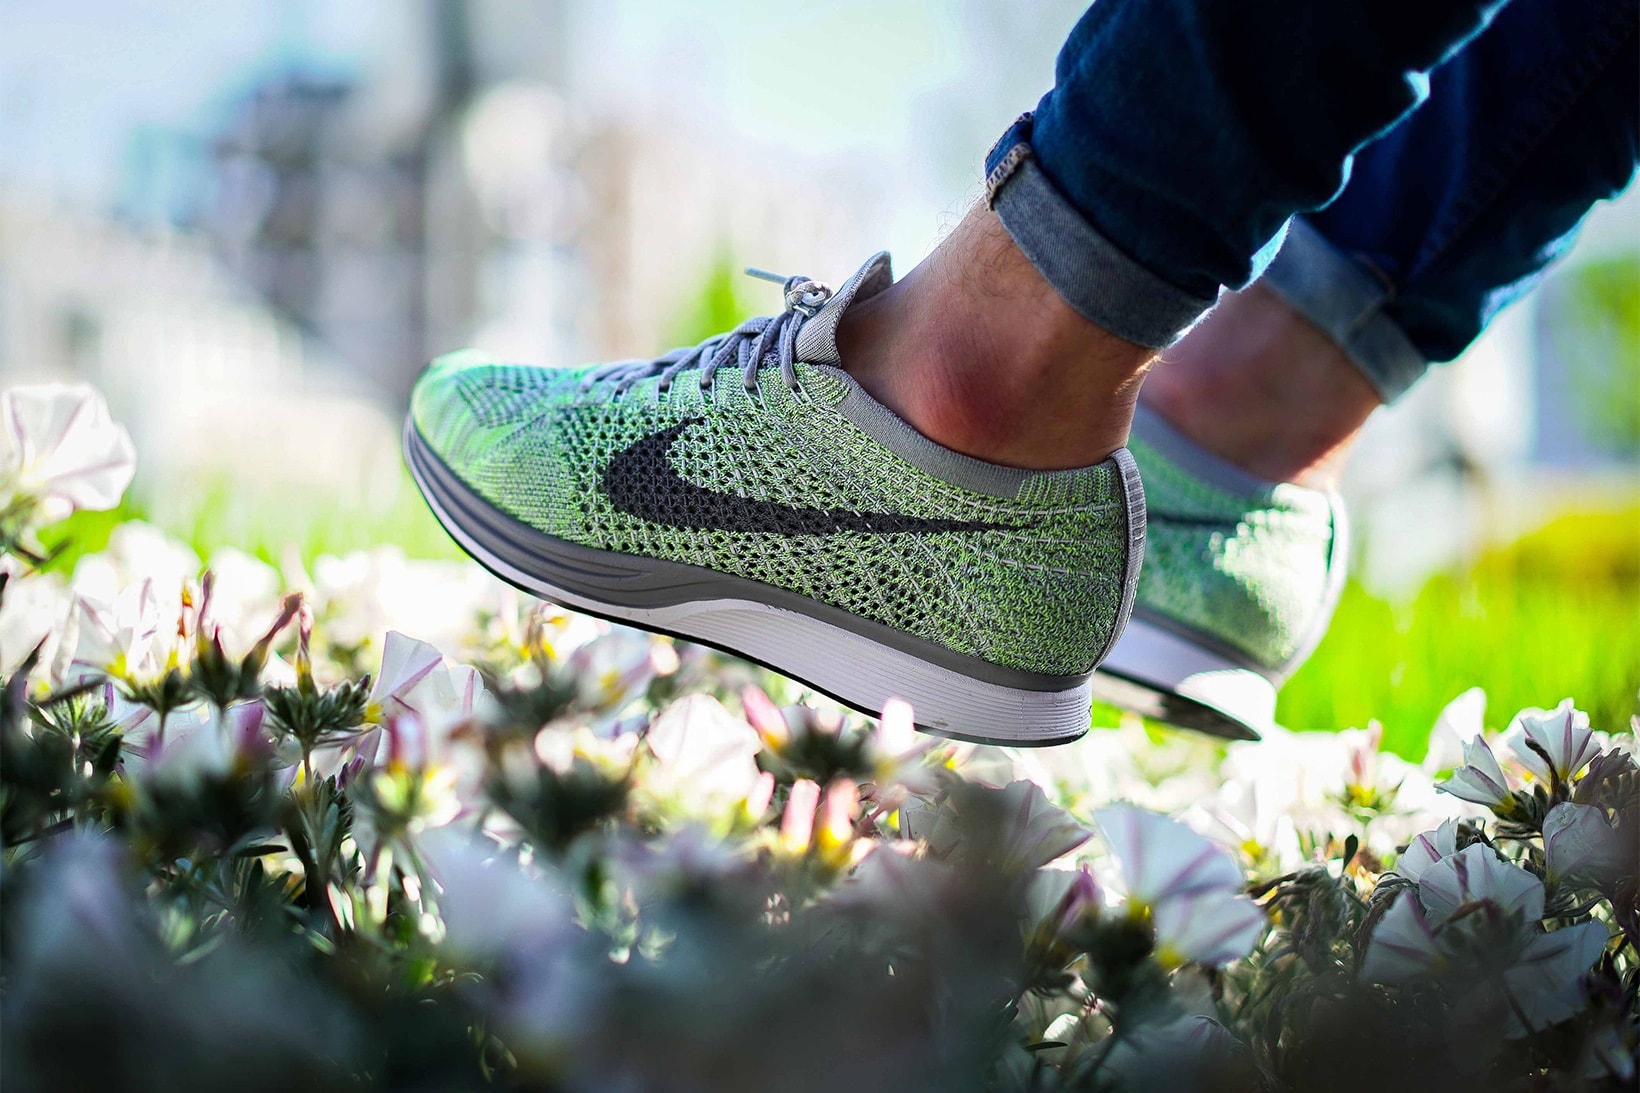 Nike Flyknit Racer “Macaroon” On-Feet